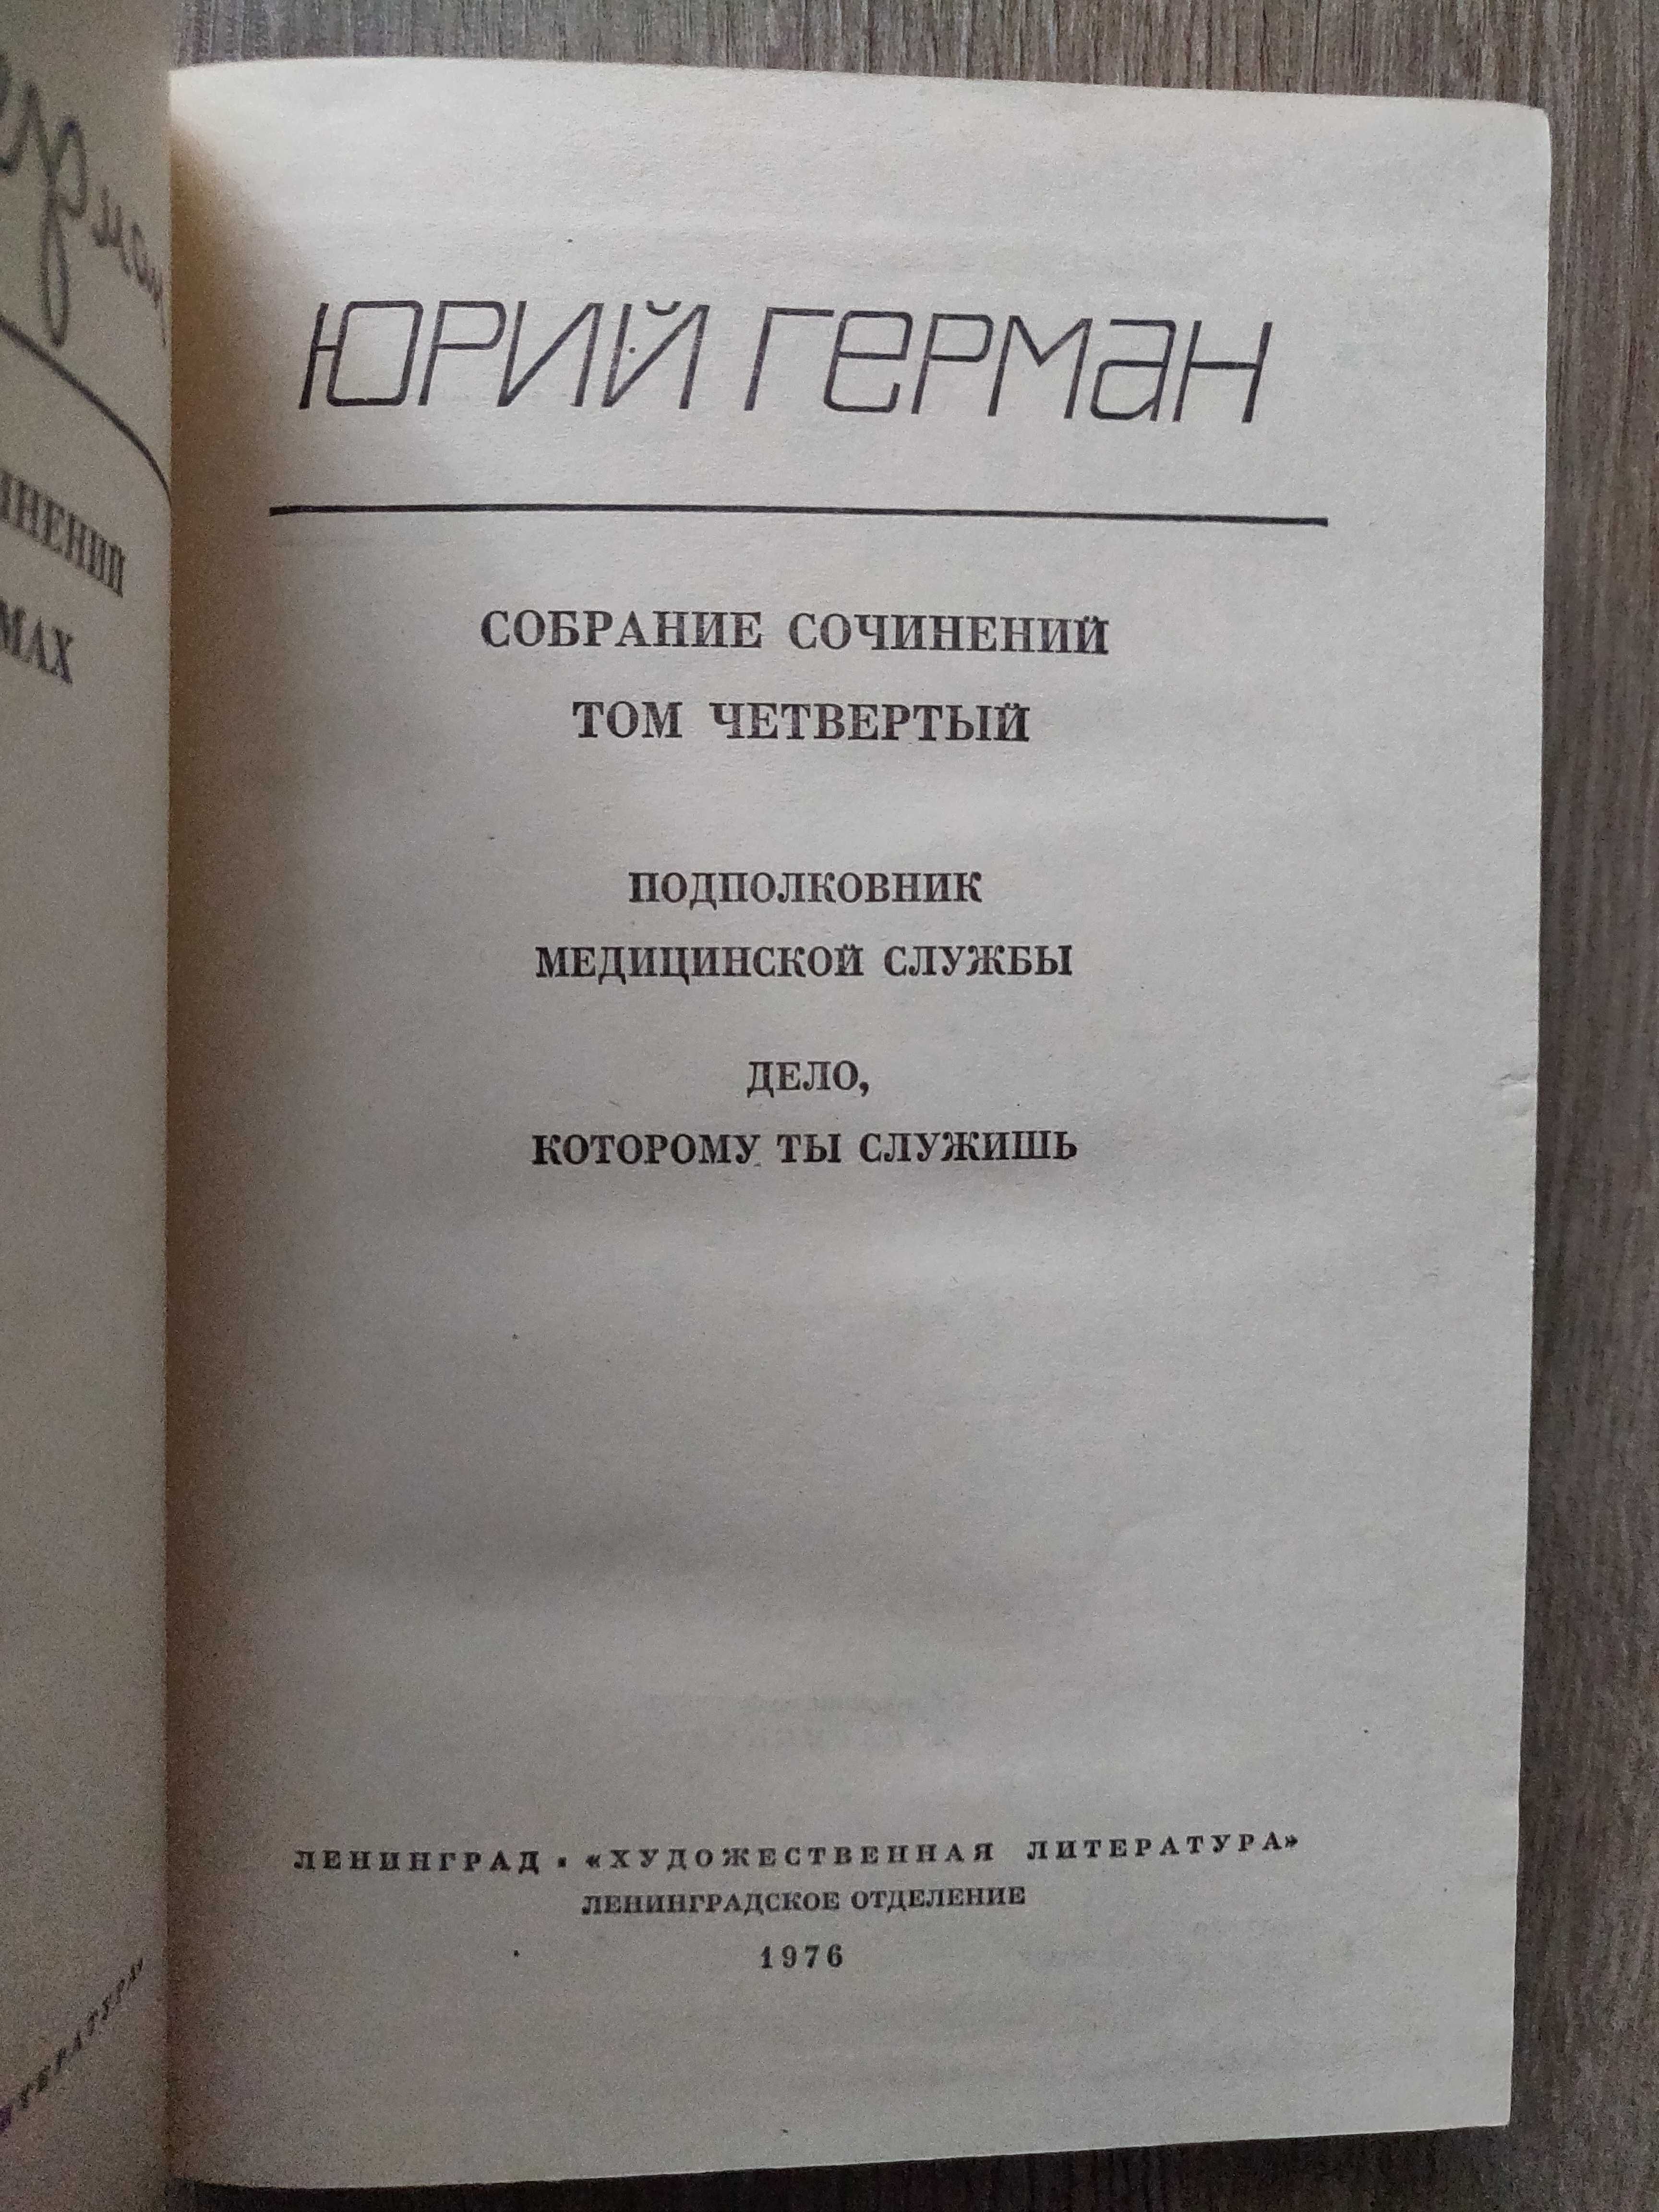 Юрий Герман  в 6 томах. 1976 г.